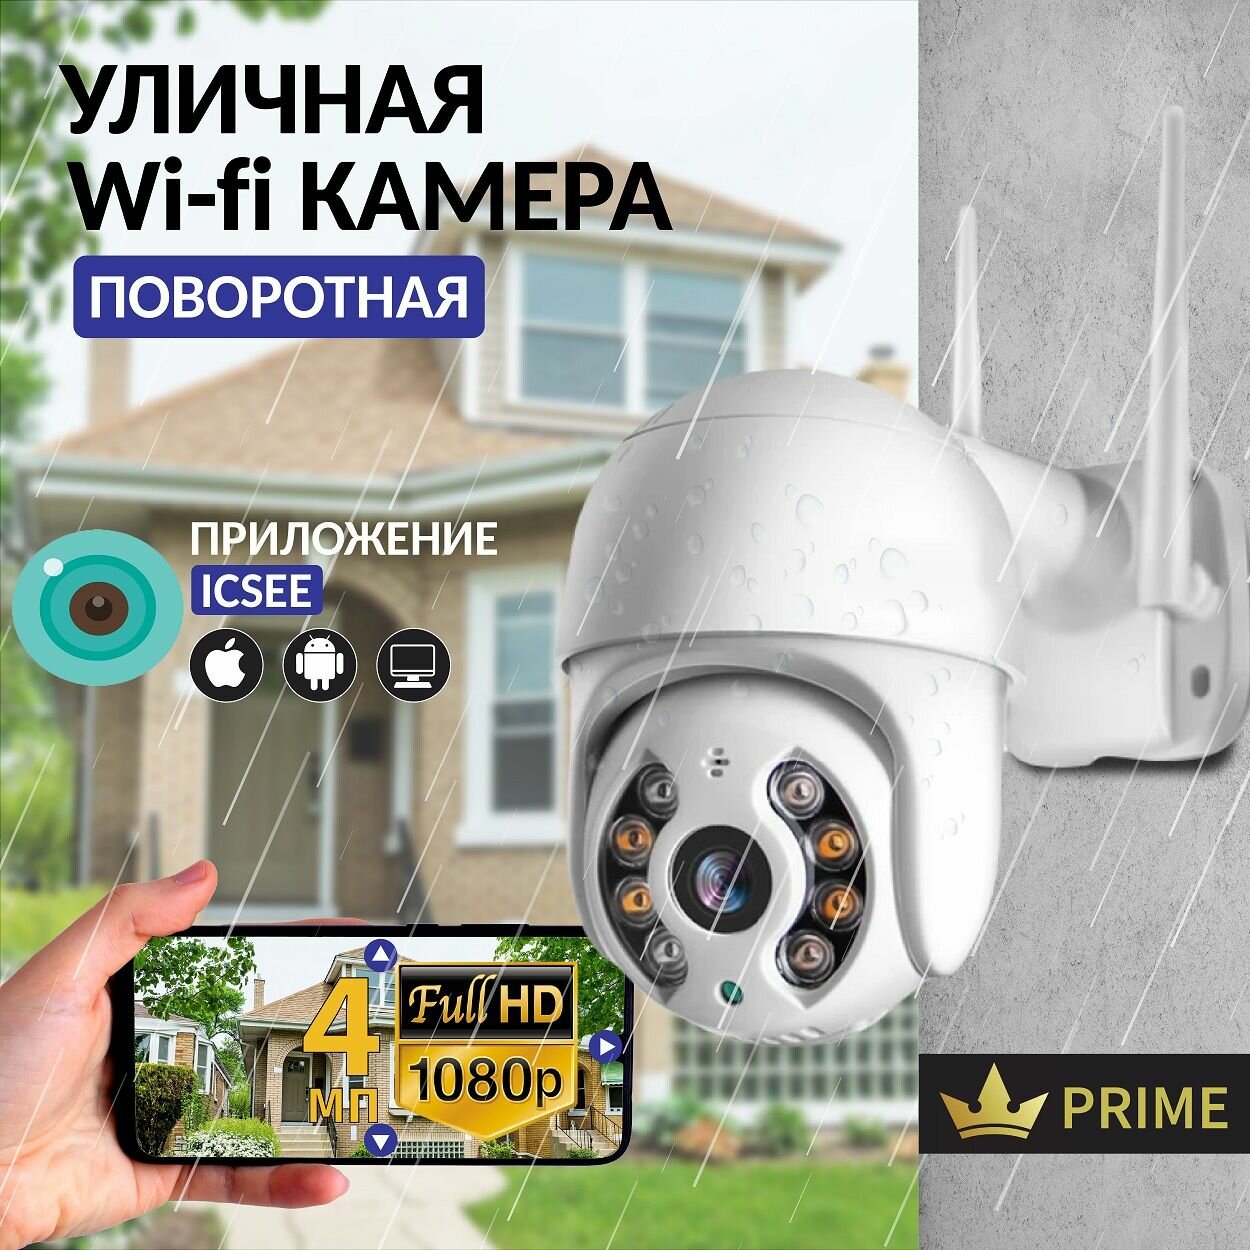 Камера видеонаблюдения Wifi уличная поворотная 4 Мп IP видеокамера для дома и дачи.